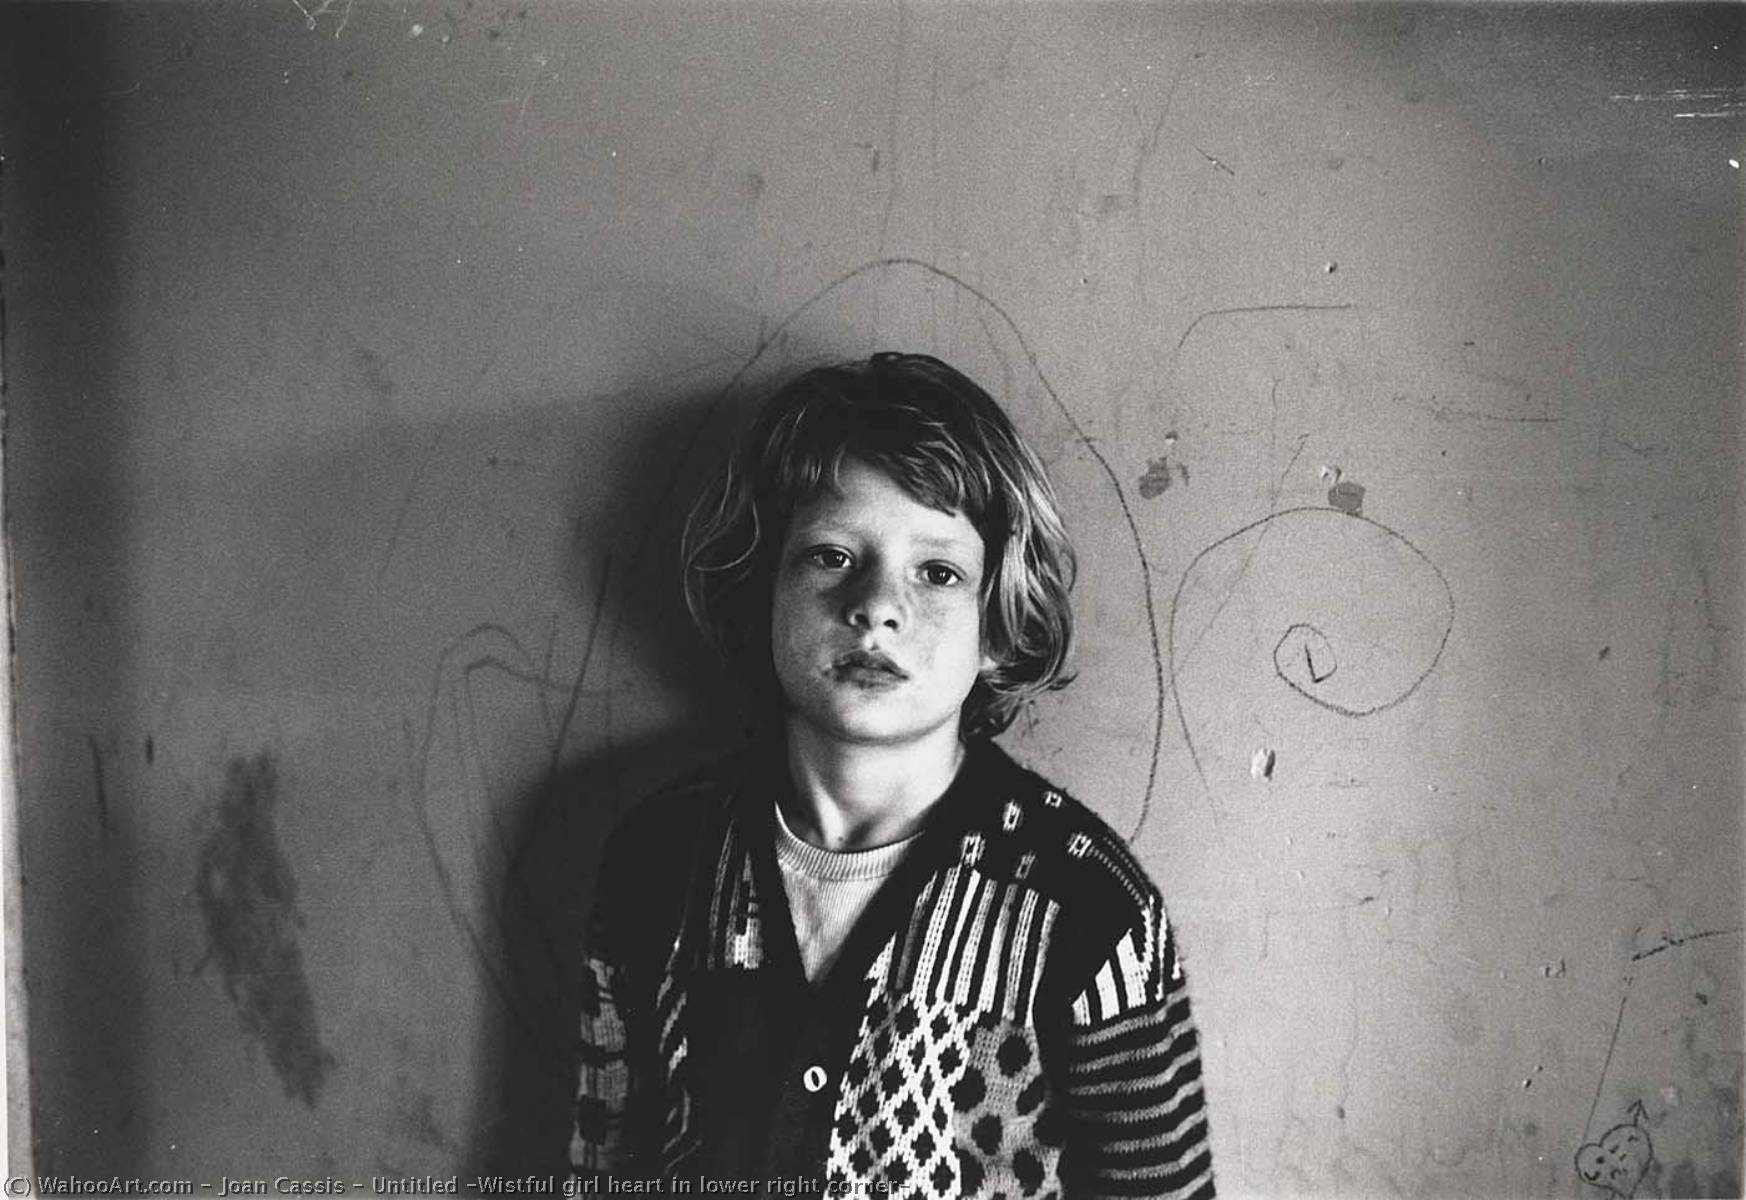 WikiOO.org - Encyclopedia of Fine Arts - Lukisan, Artwork Joan Cassis - Untitled (Wistful girl heart in lower right corner)